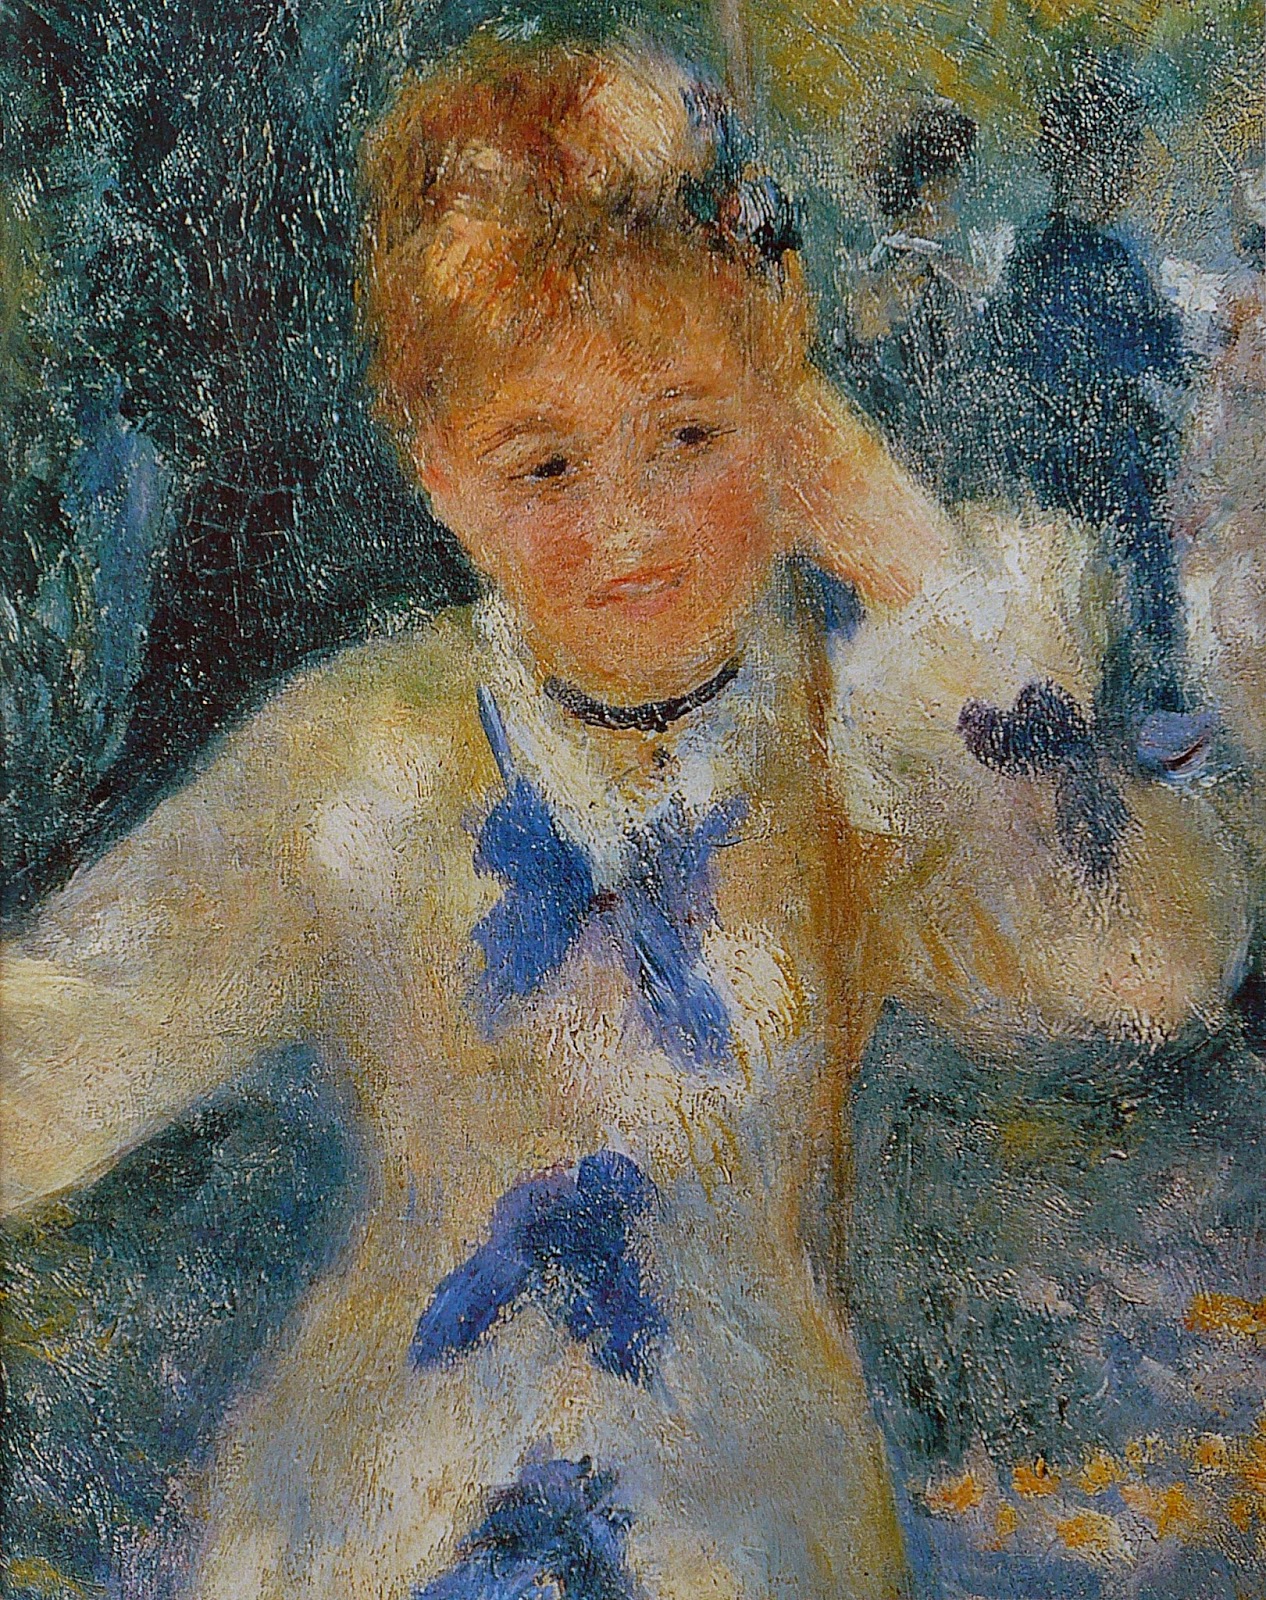 Pierre+Auguste+Renoir-1841-1-19 (693).jpg